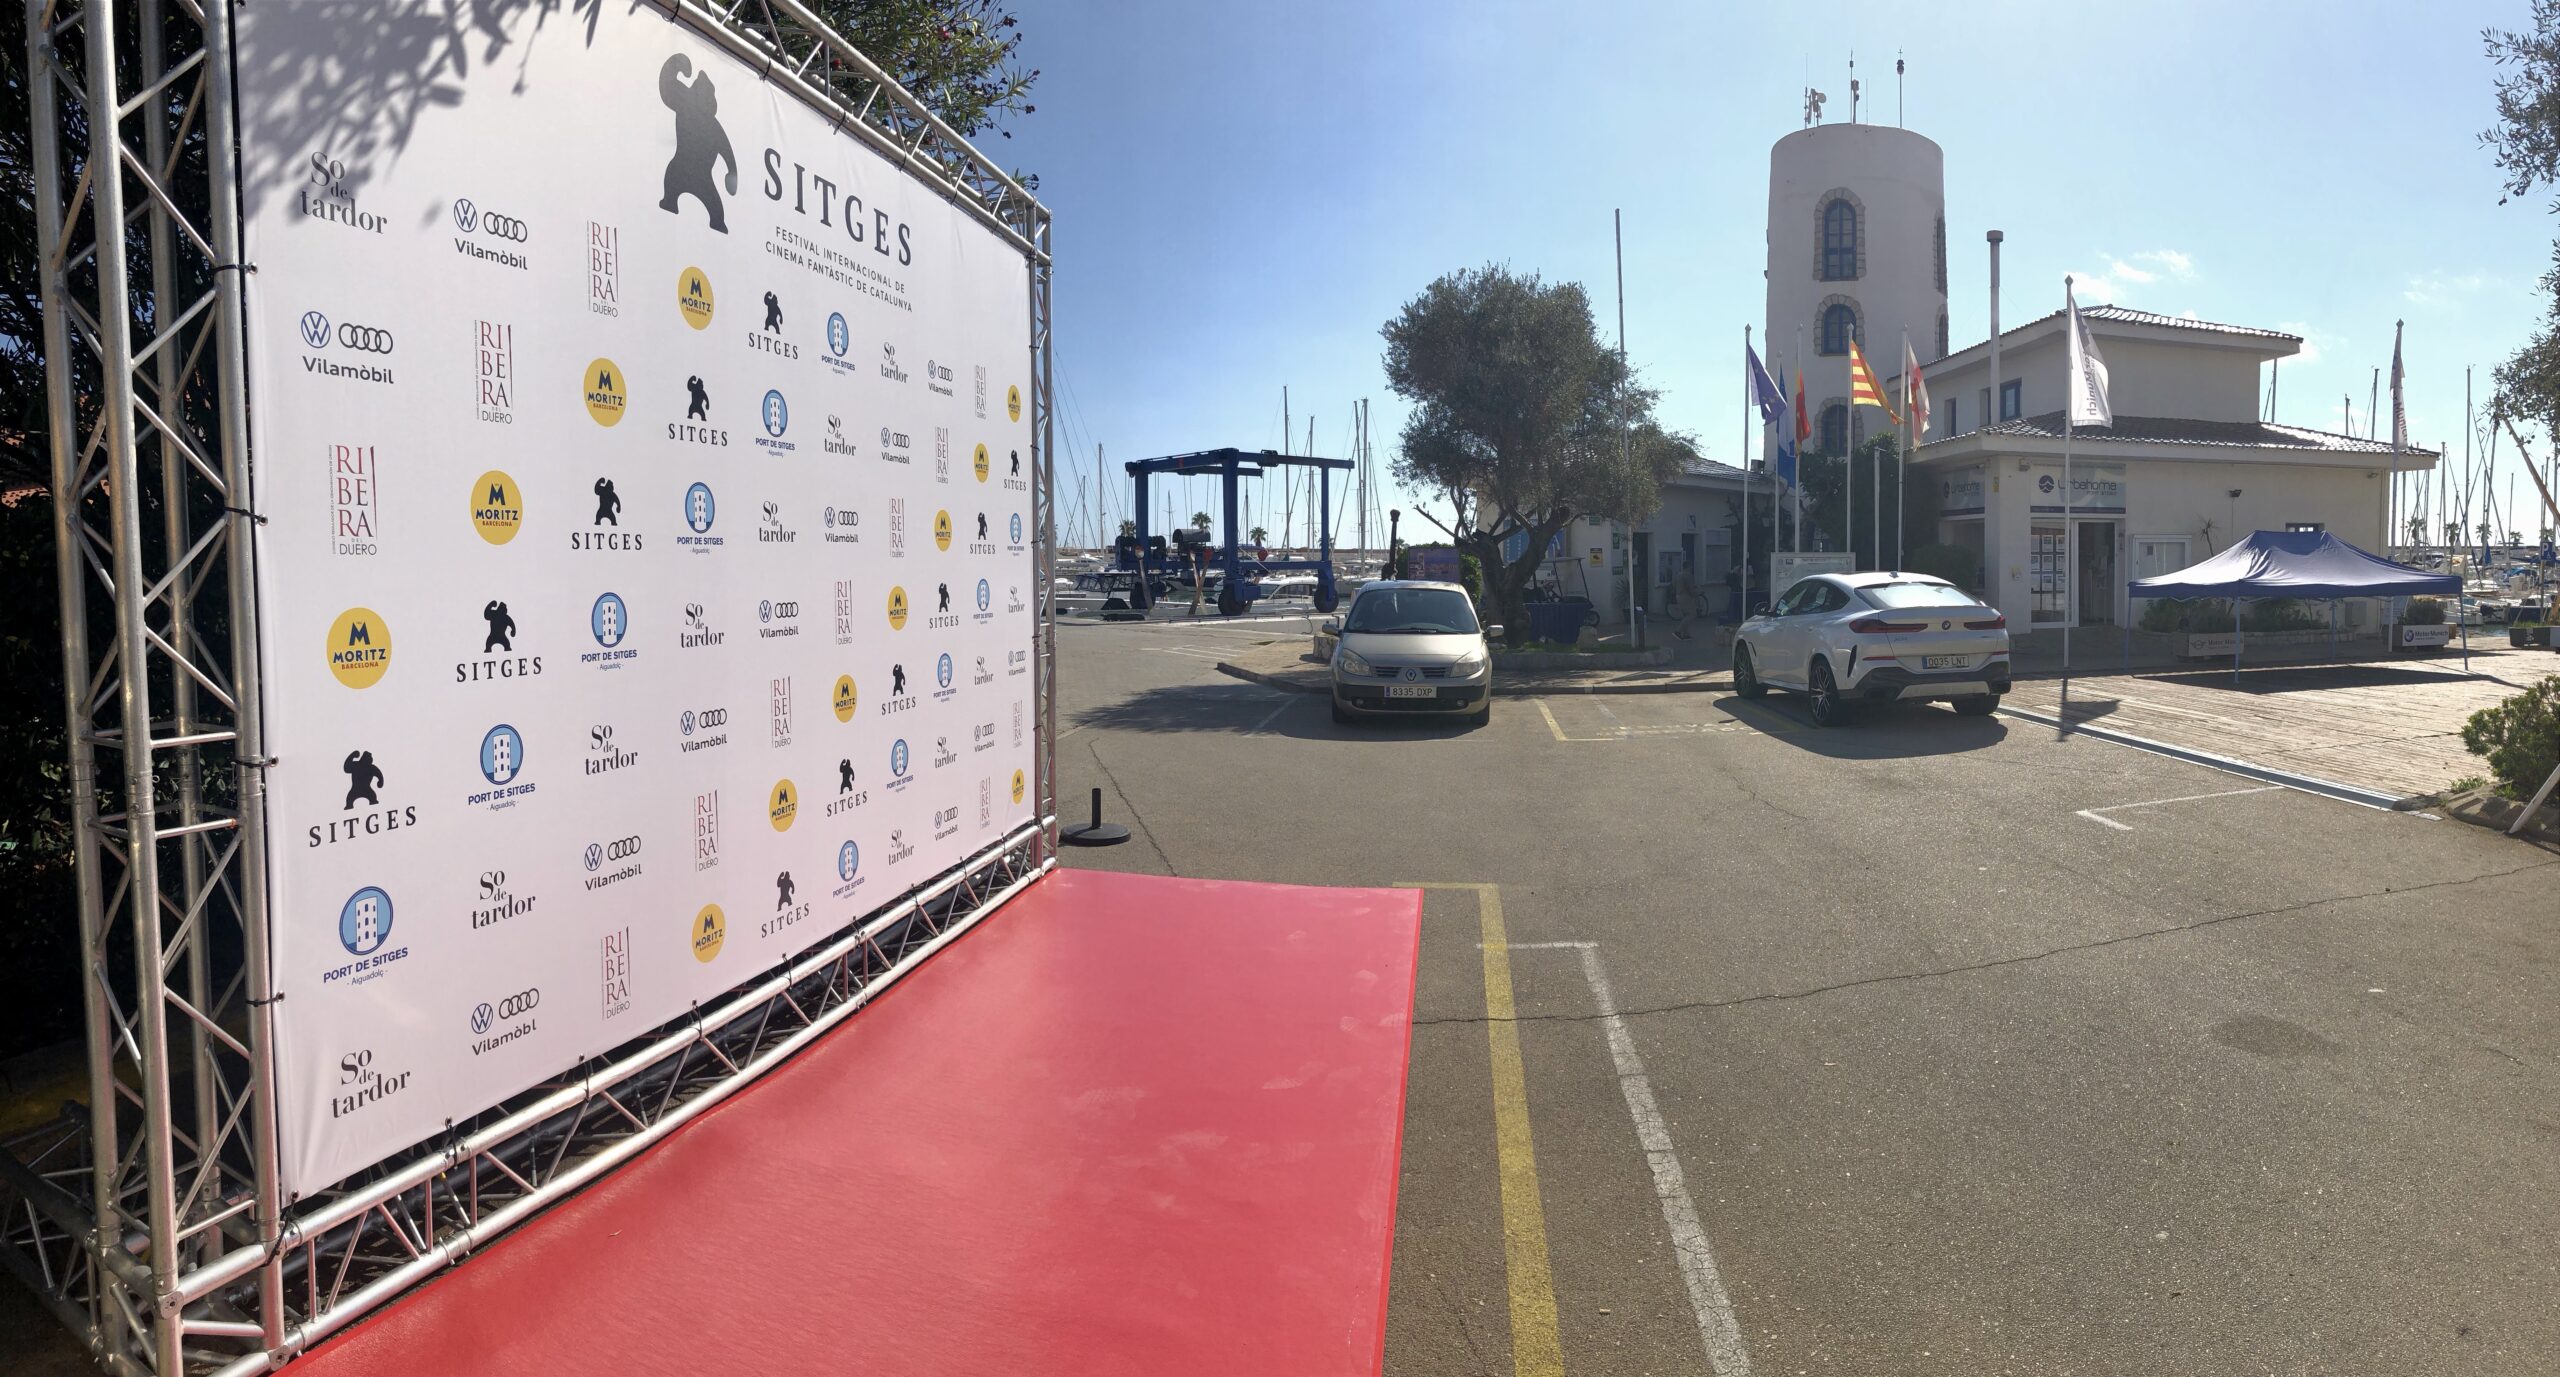 El Port de Sitges es uno de los actores principales del Festival de Cine